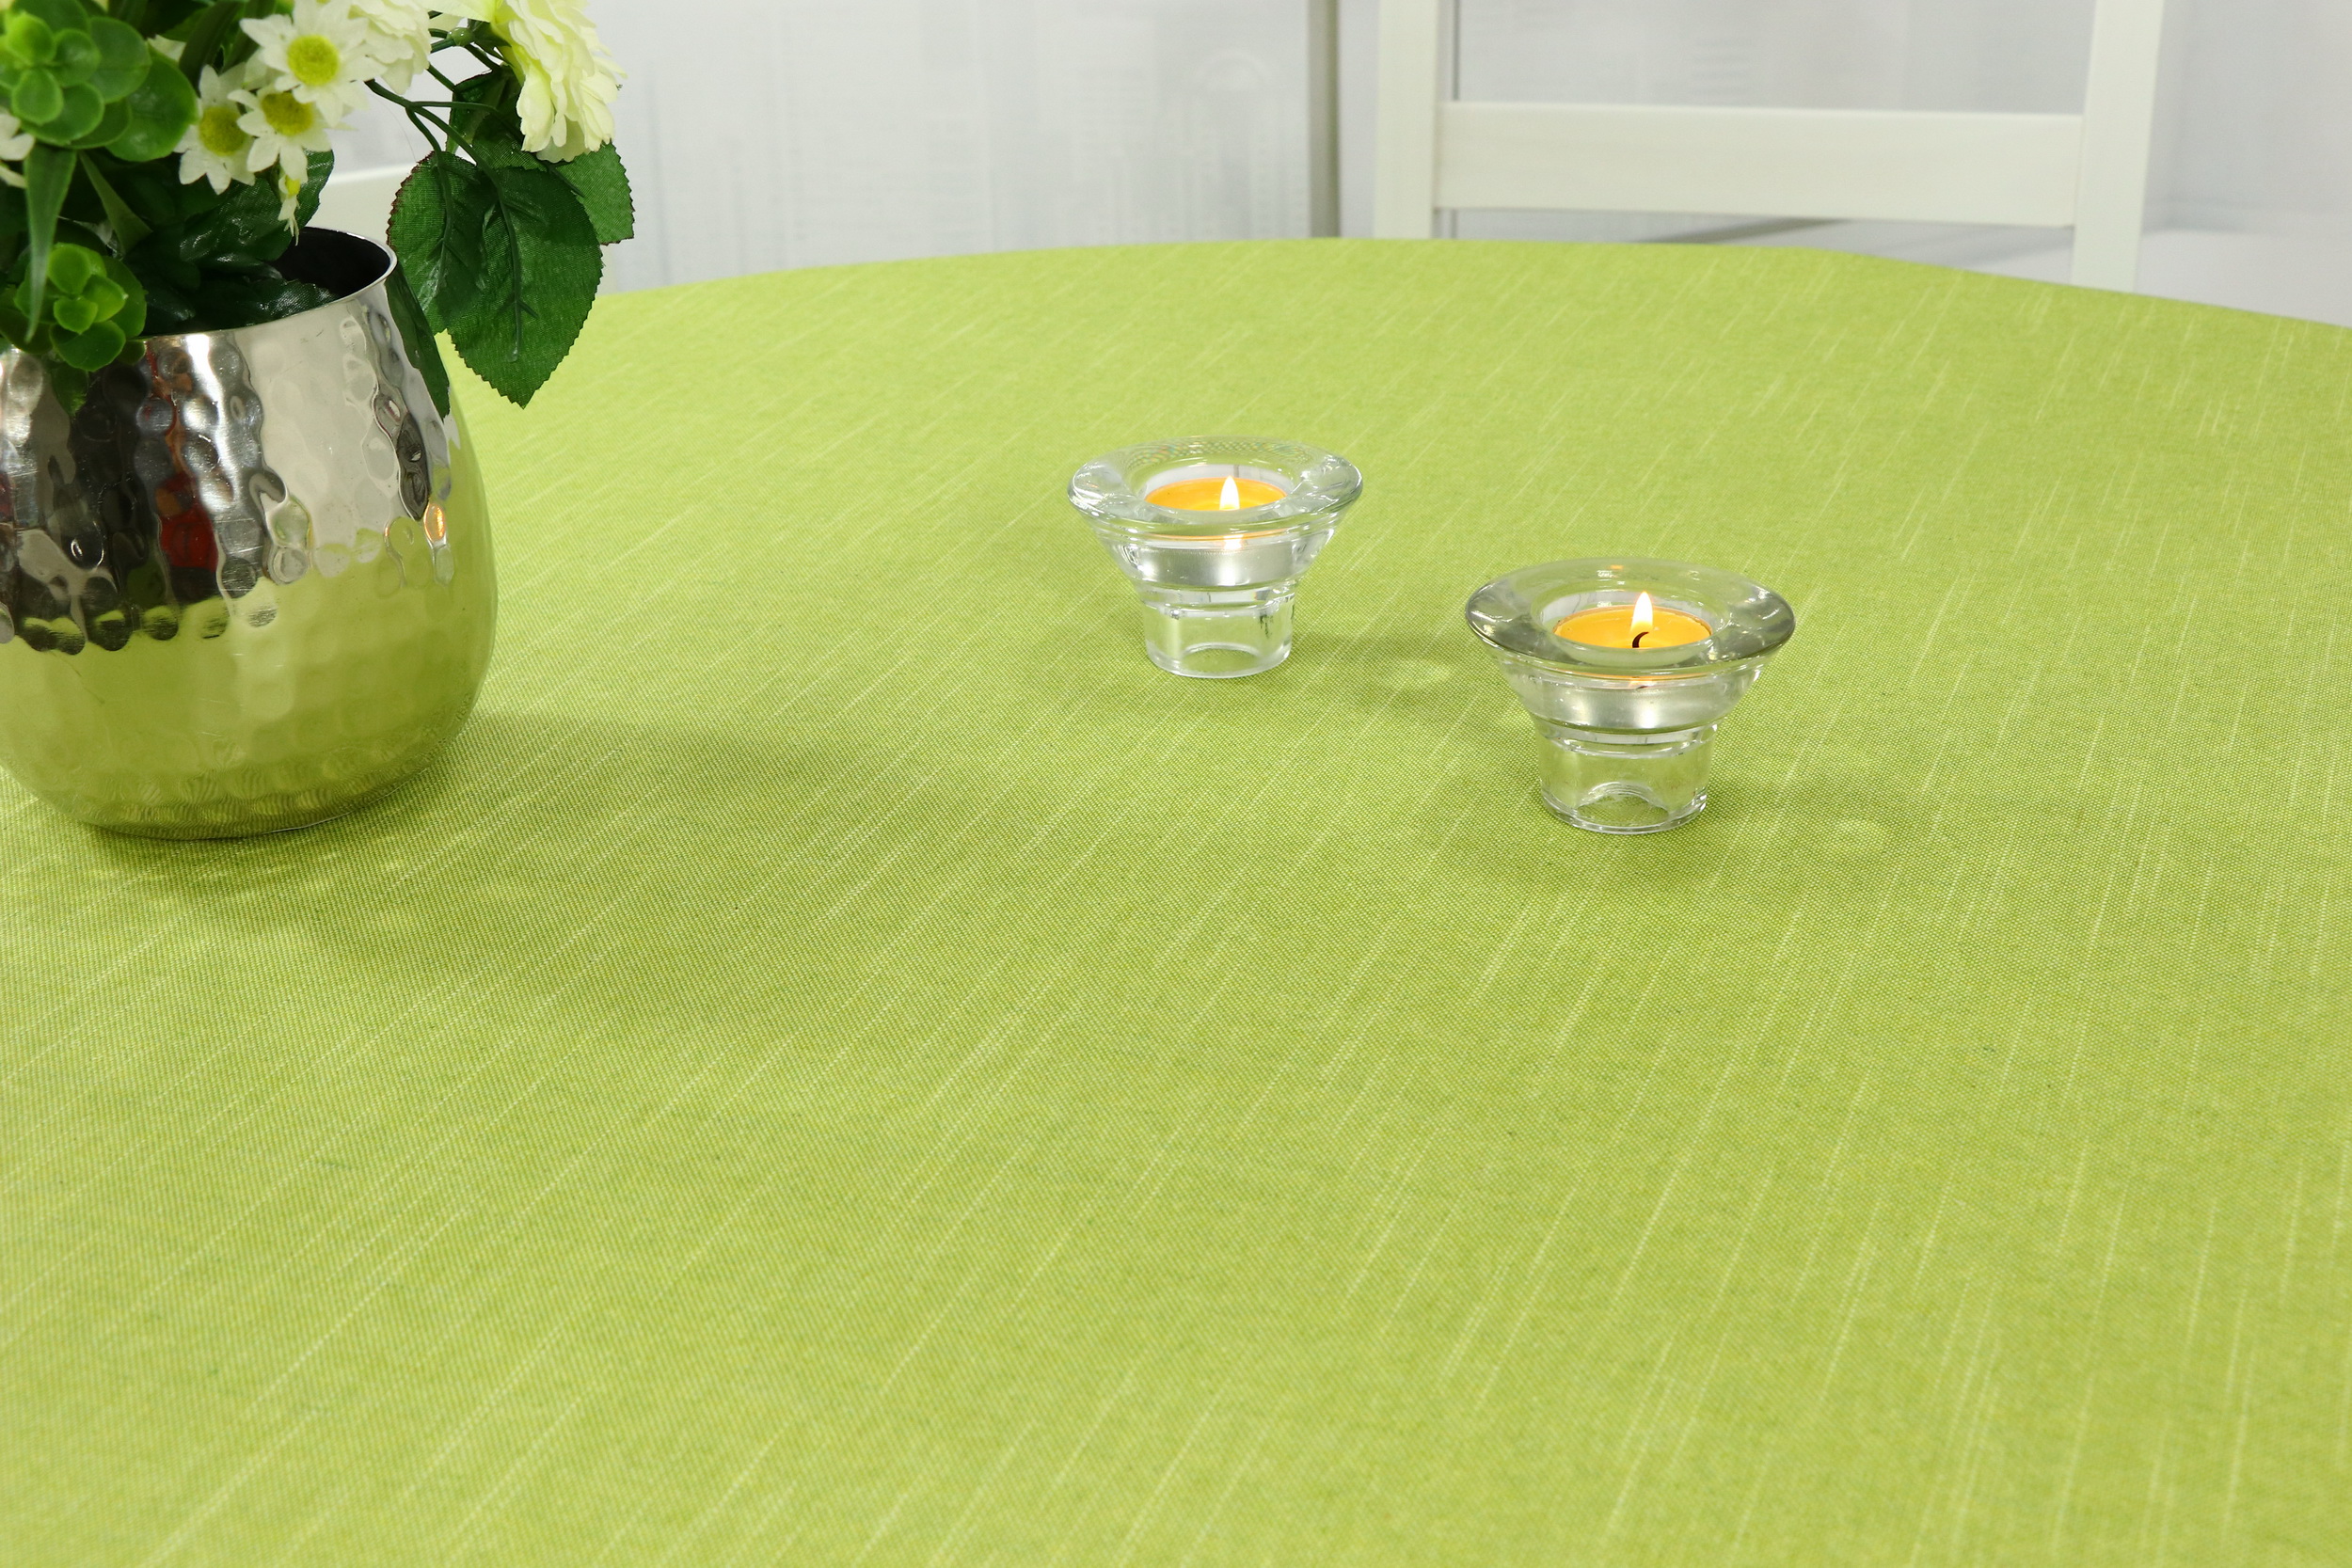 Tischdecke Mai-Grün abwaschbar: Abwischen und sauber: Es ist so einfach! |  TiDeko® Tischdecken-Shop.de. Tischdecken Markenqualität